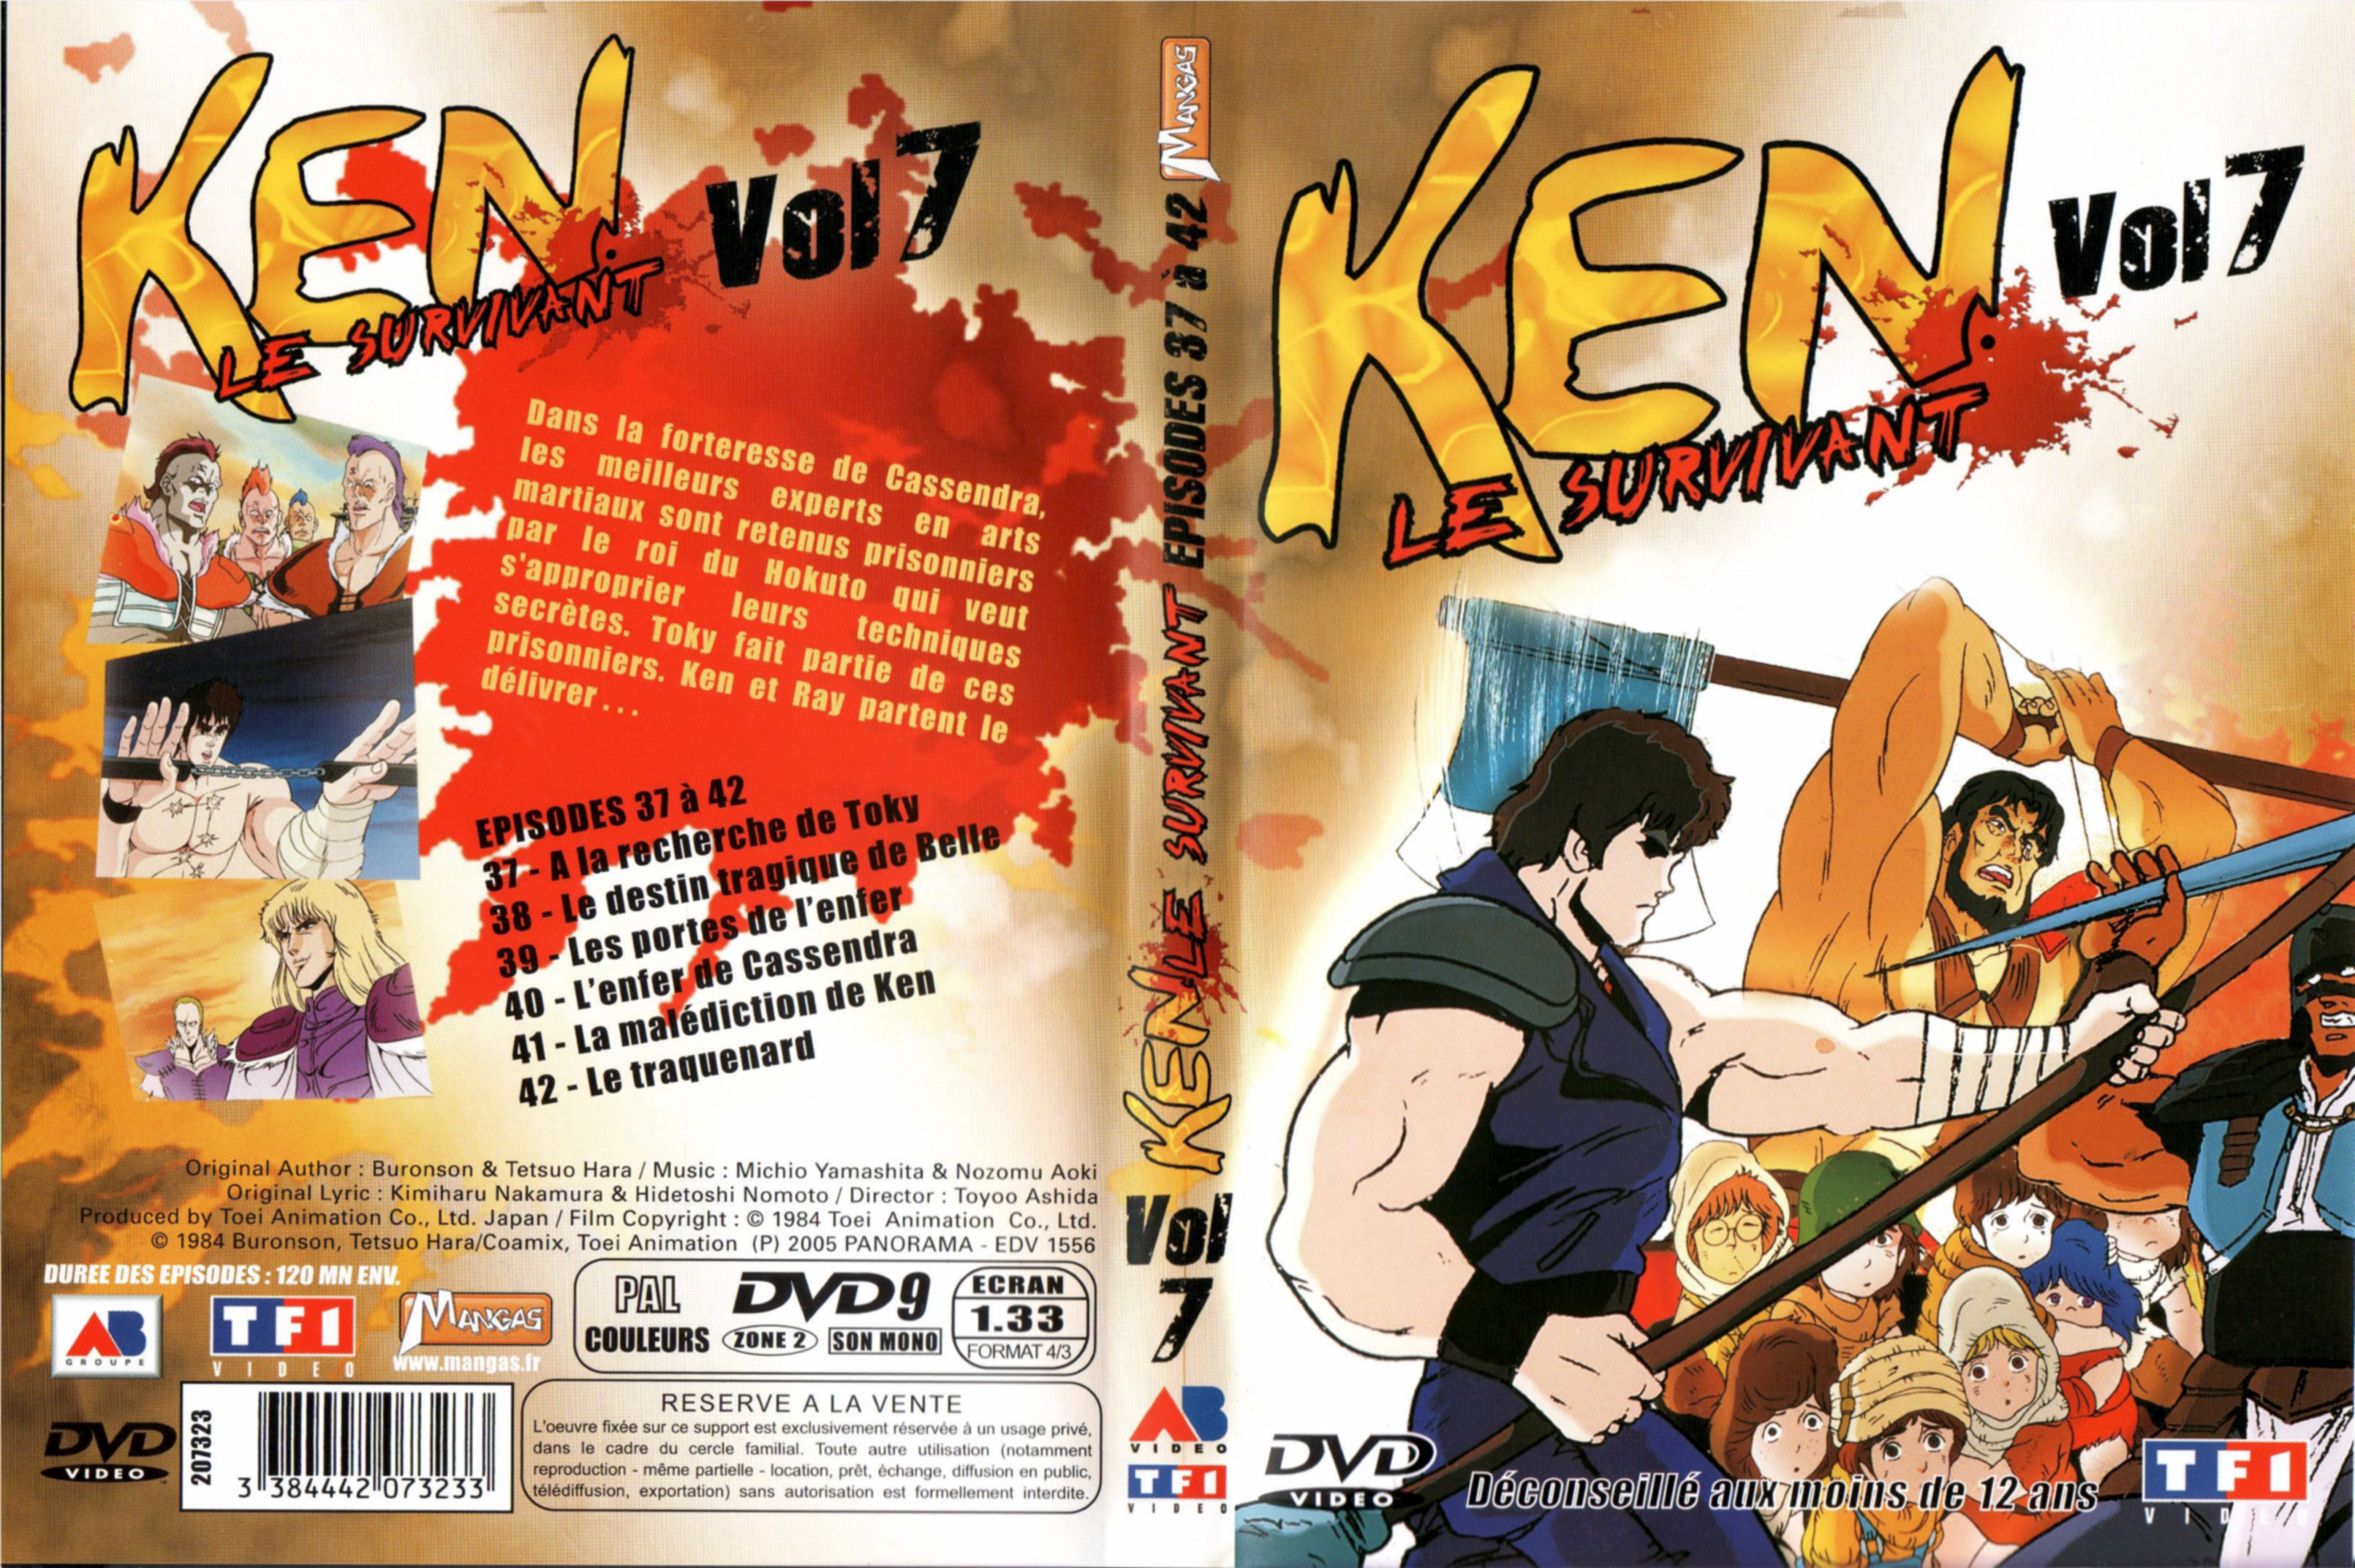 Jaquette DVD Ken le survivant vol 7